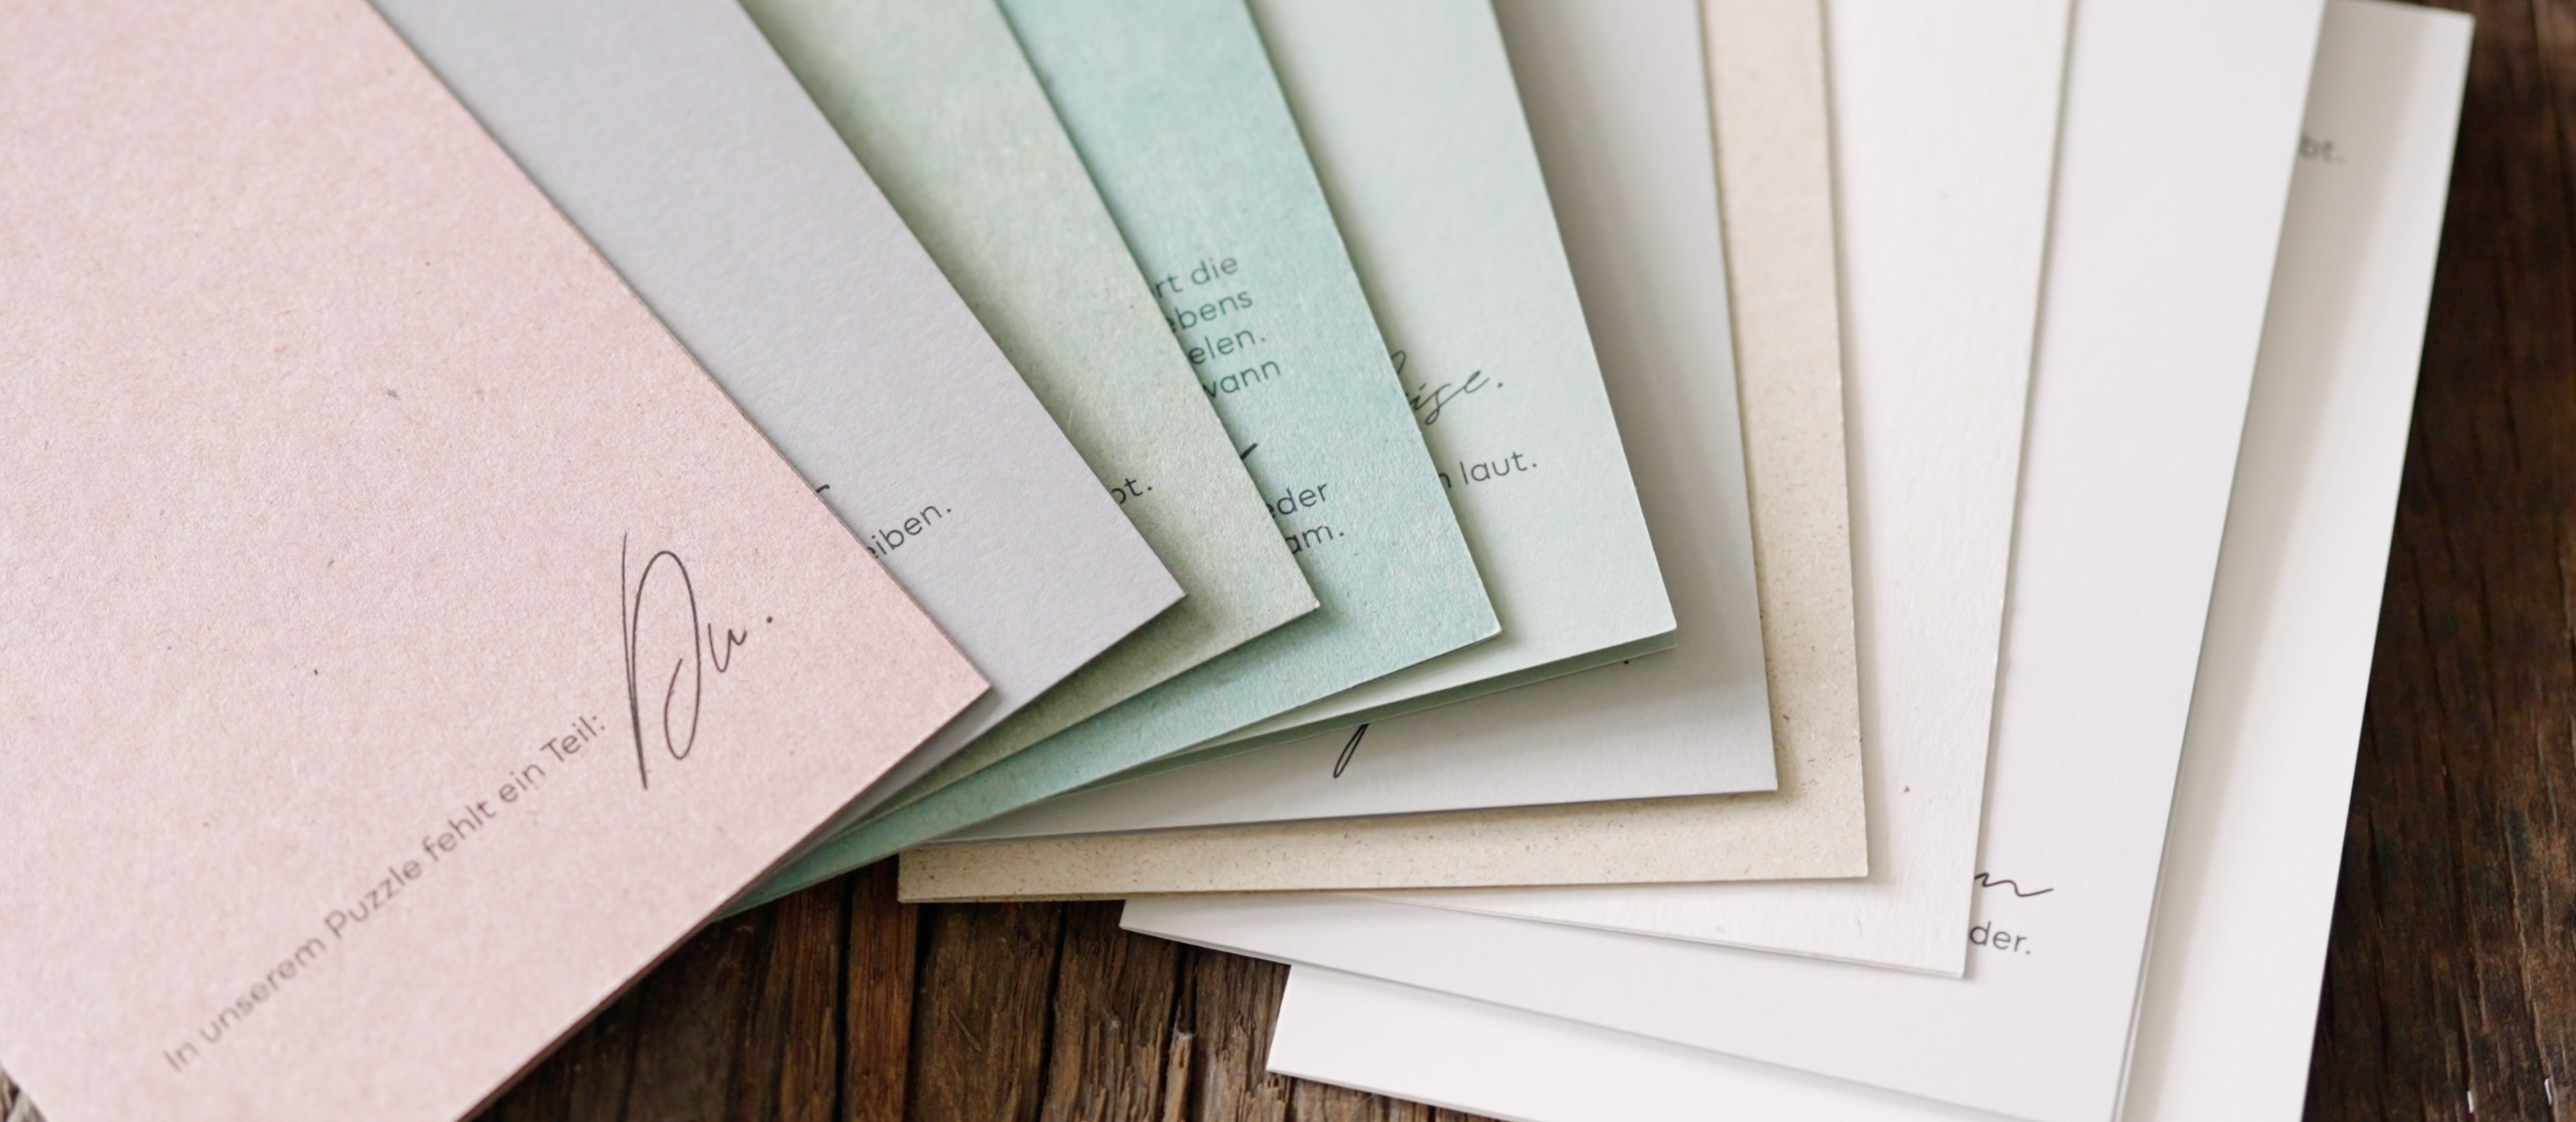 Hochwertige Trauerkarte in gefühlvollen Farben inkl. passendem Umschlag und edlem Einleger